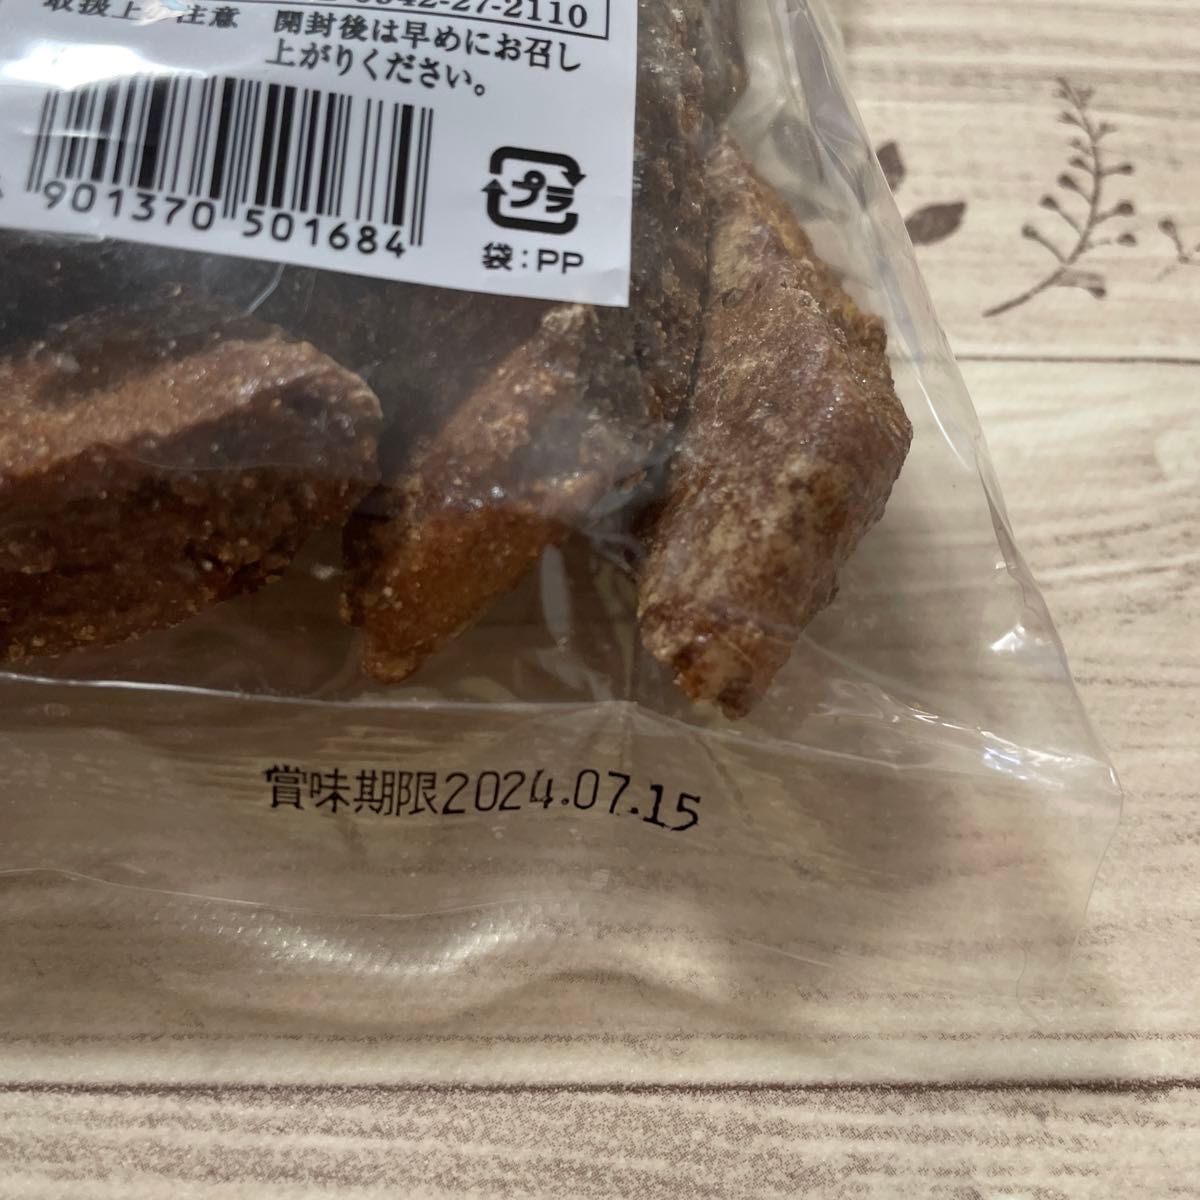 黒ぼう ちいさか黒ぼう クロボー 福岡久留米銘菓 大容量 2袋セット